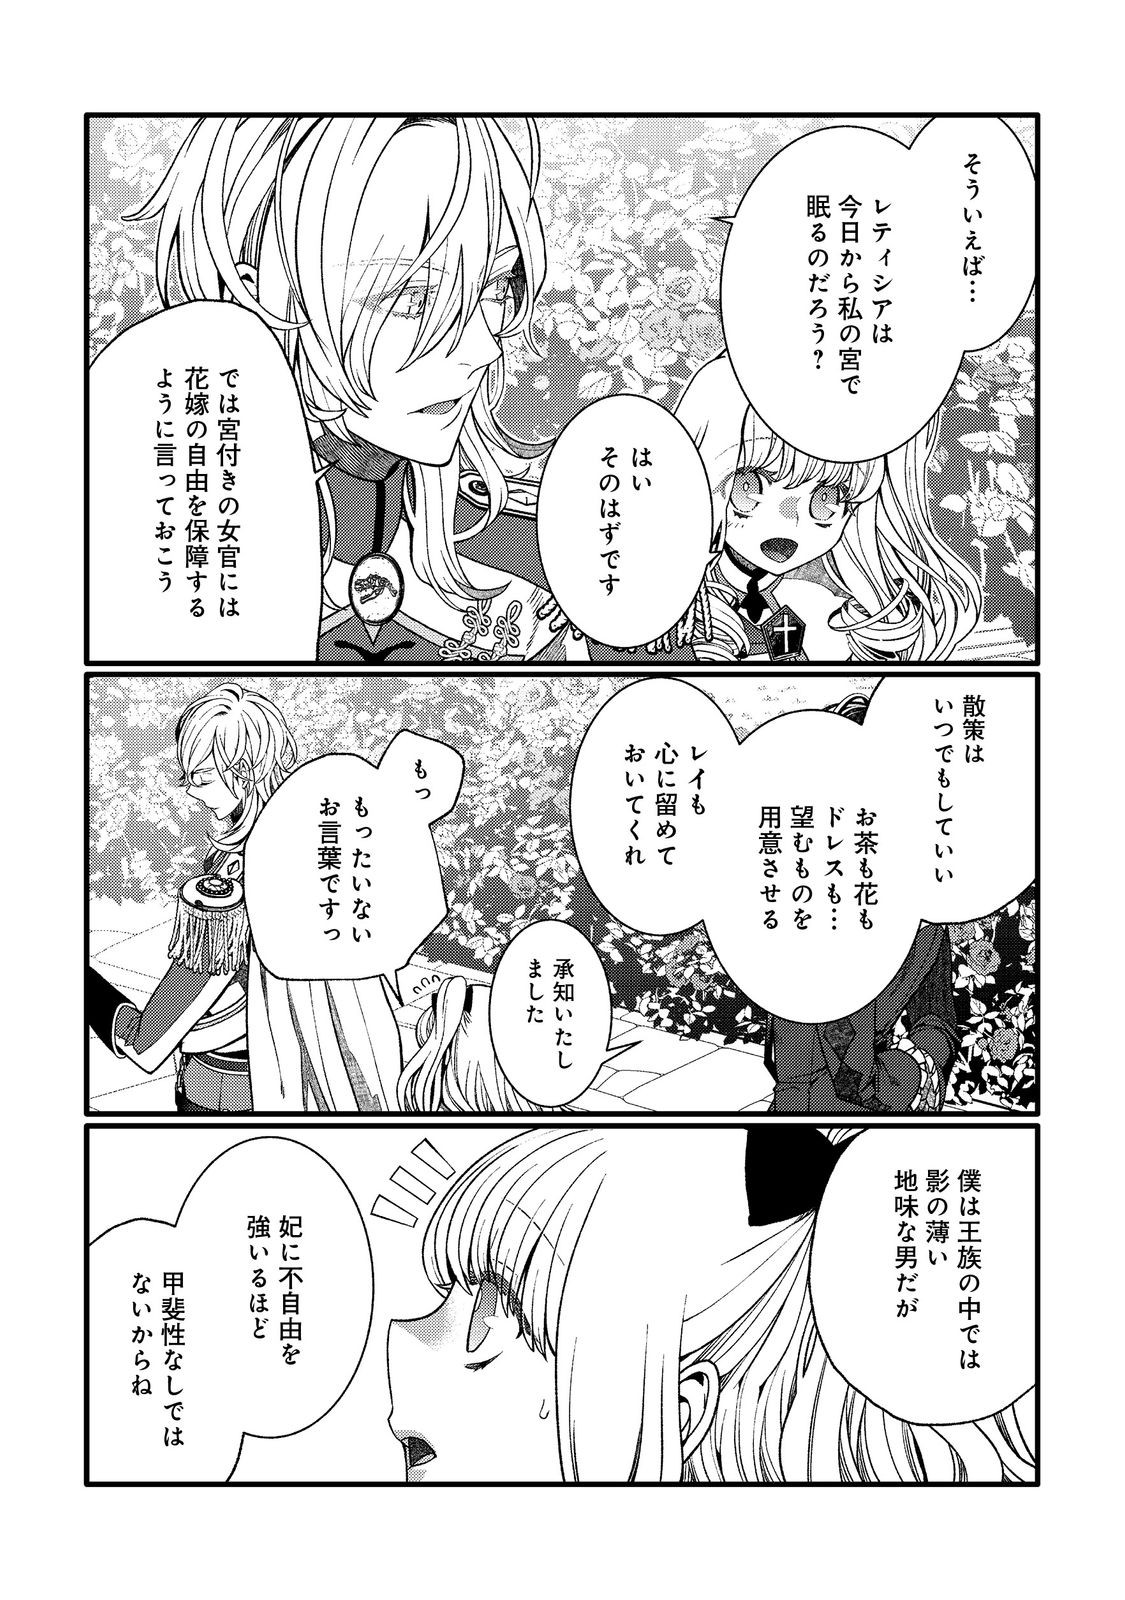 5-sai de, Ryuu no Ou Otoutou Denka no Hanayoume ni Narimashita - Chapter 2.1 - Page 6